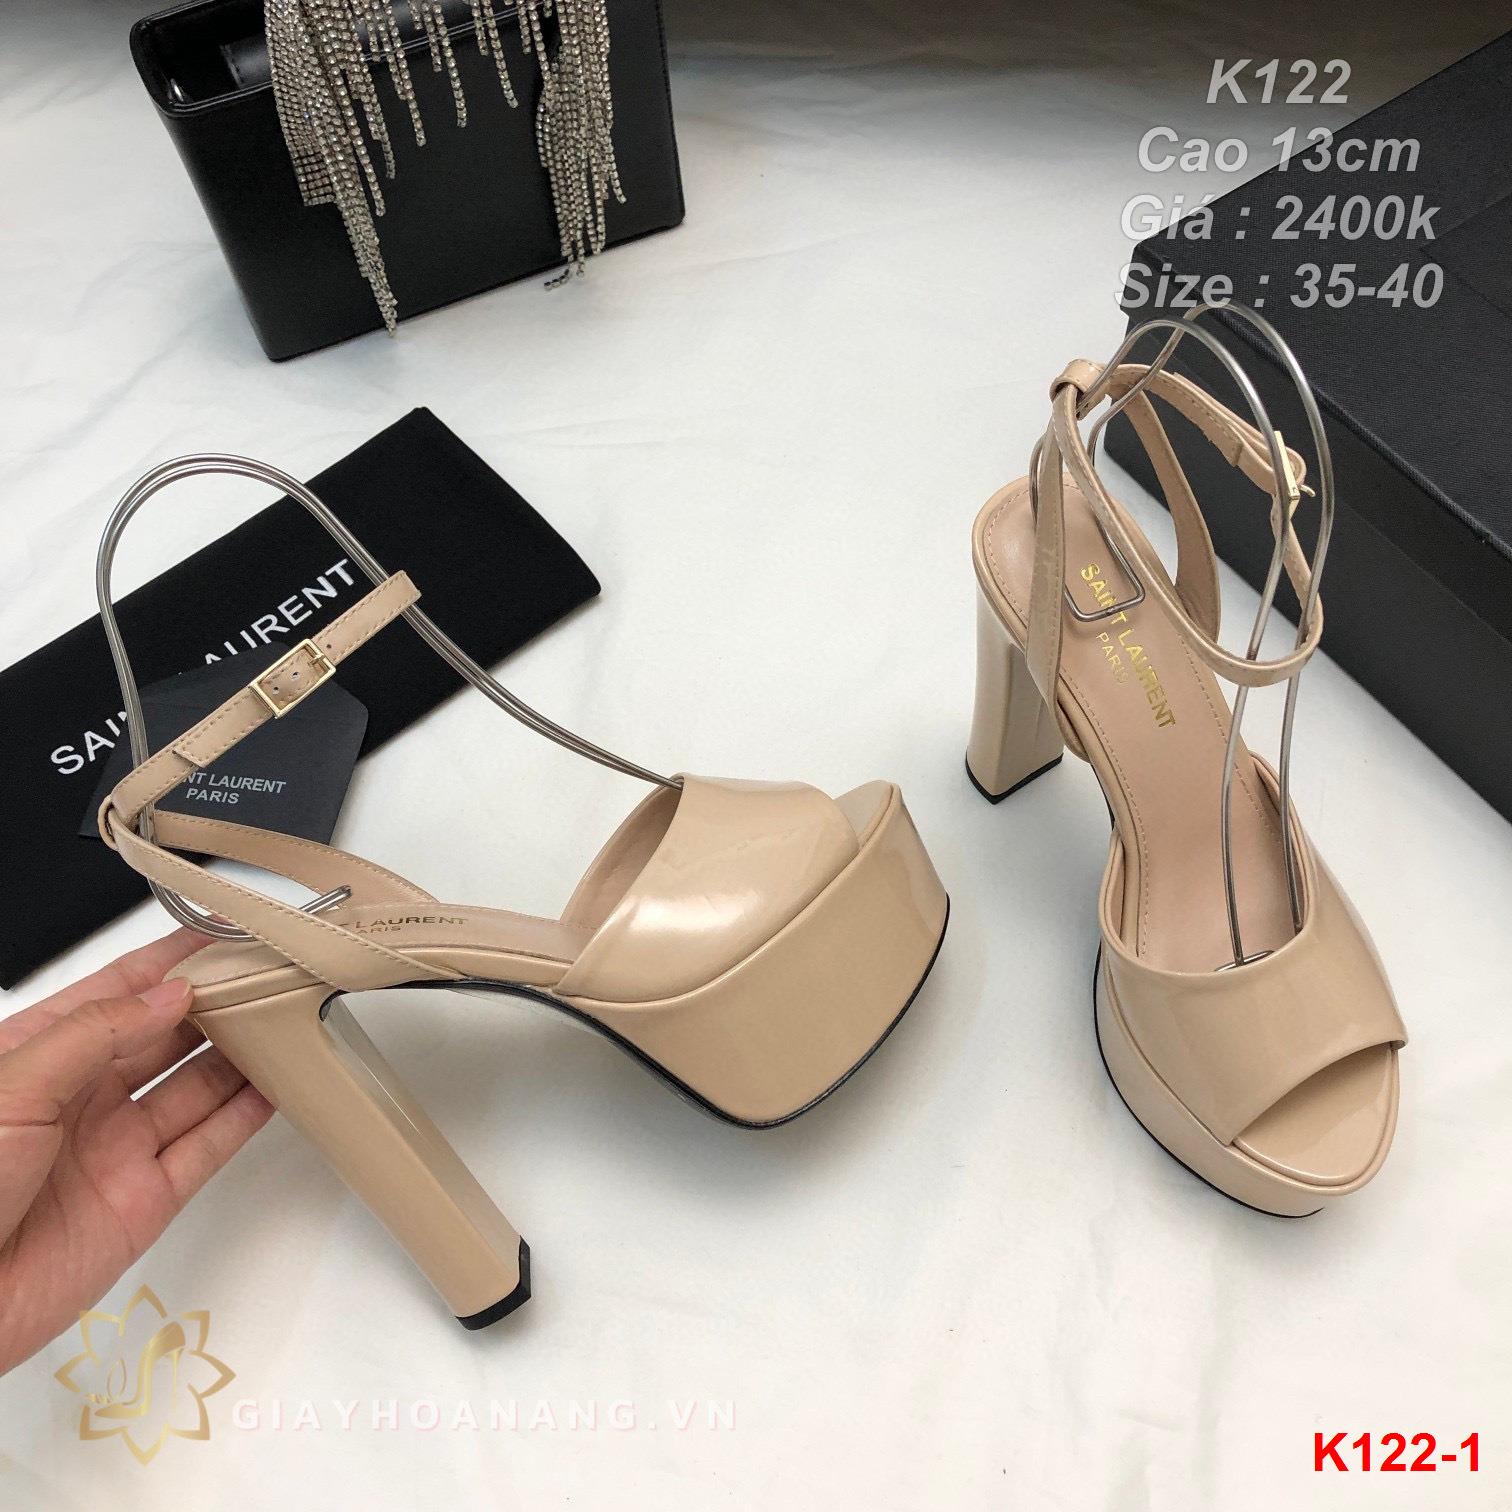 K122-1 Saint Laurent sandal cao 13cm siêu cấp